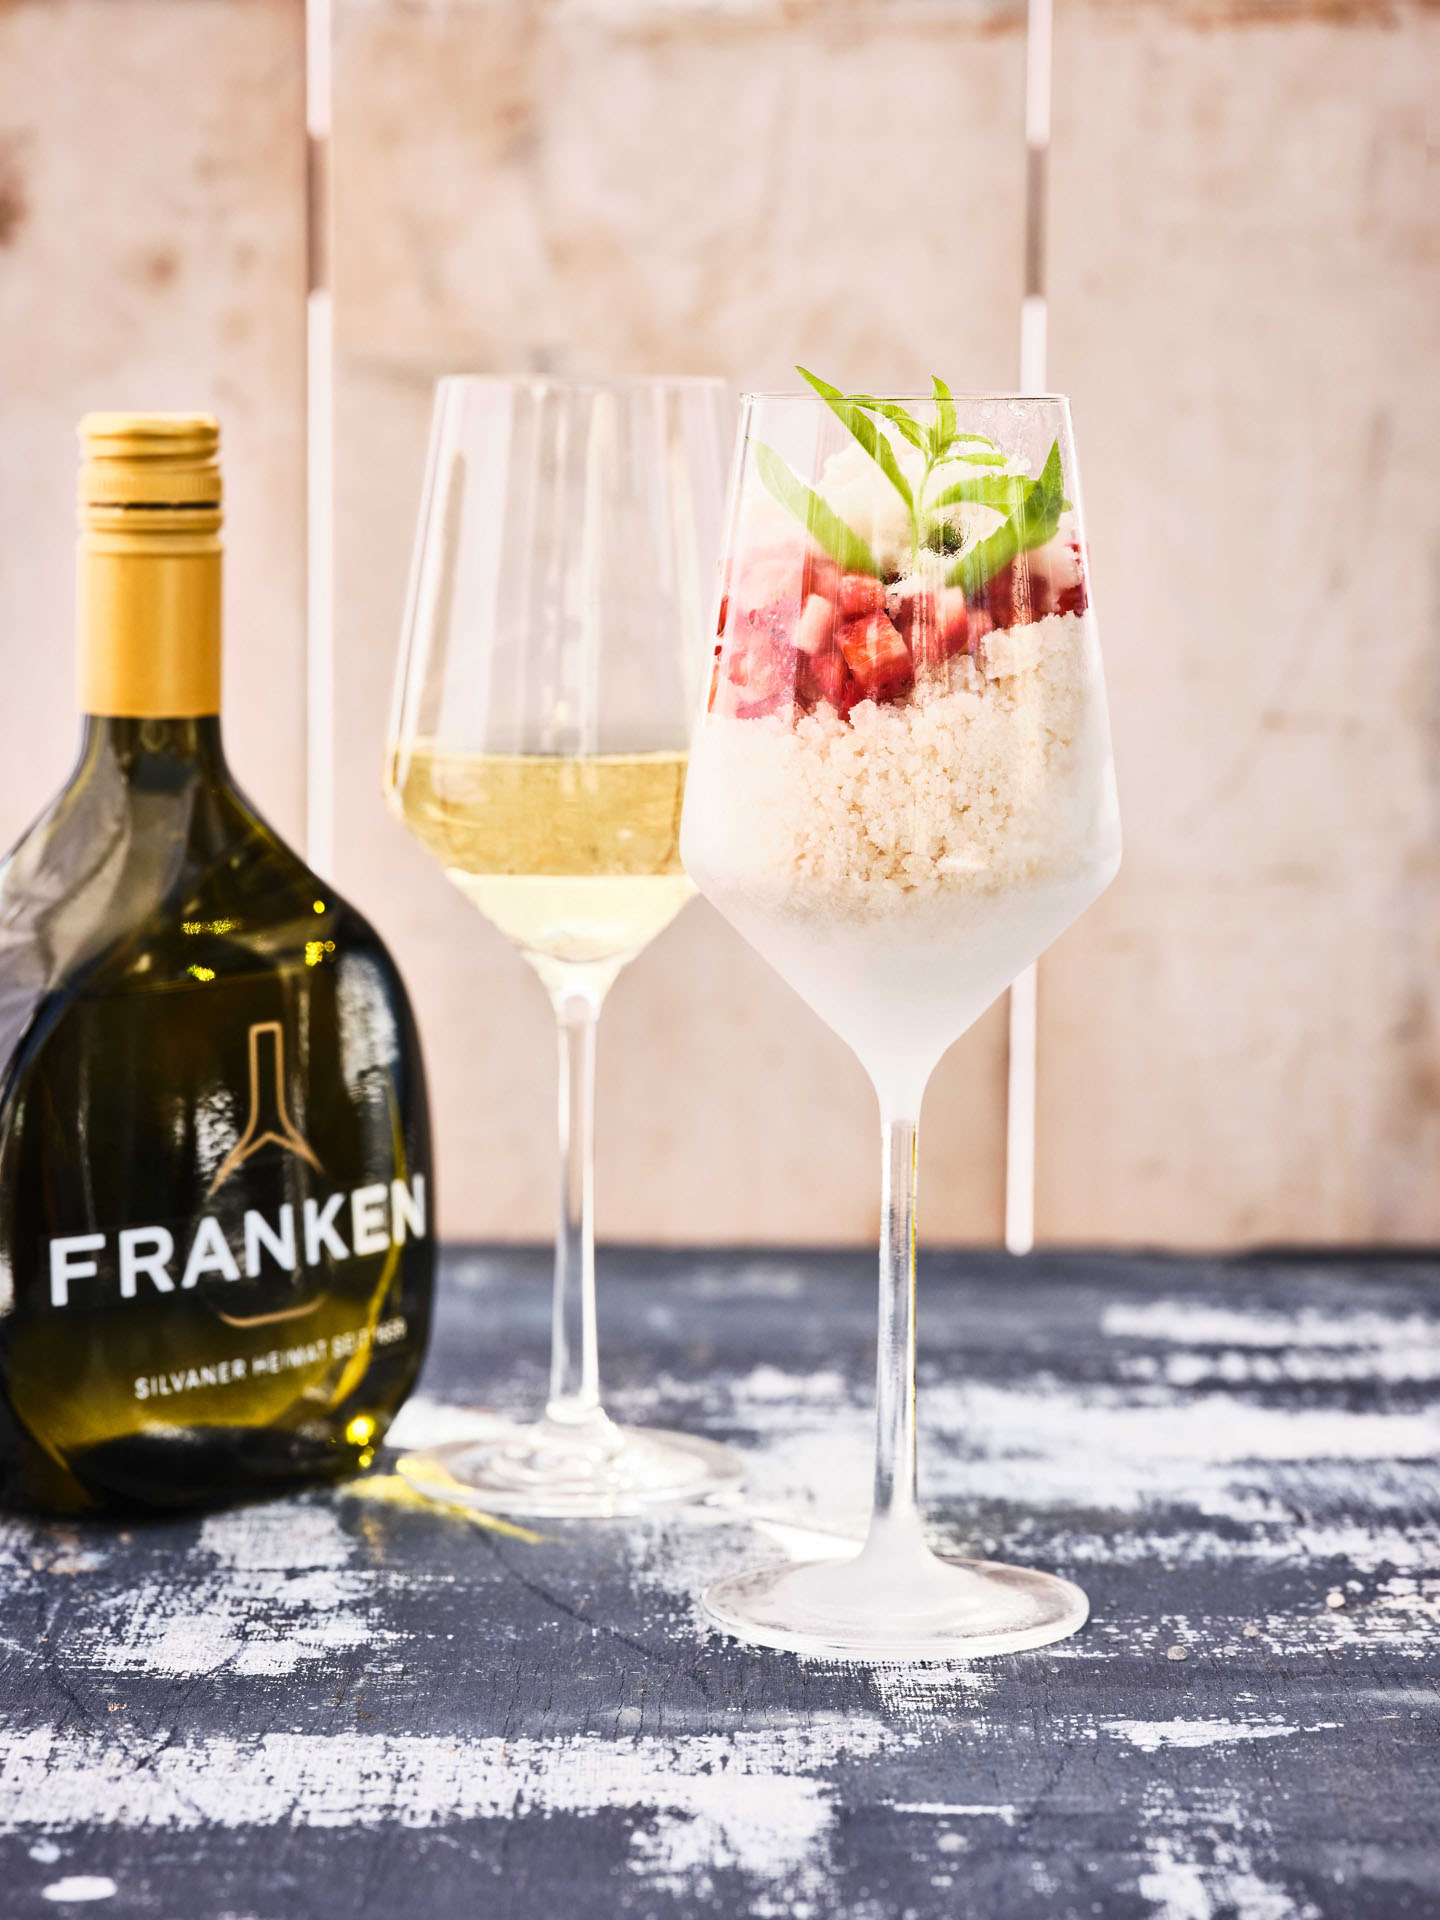 FRANKEN G.U. Granité vom Fränkischen Weißwein